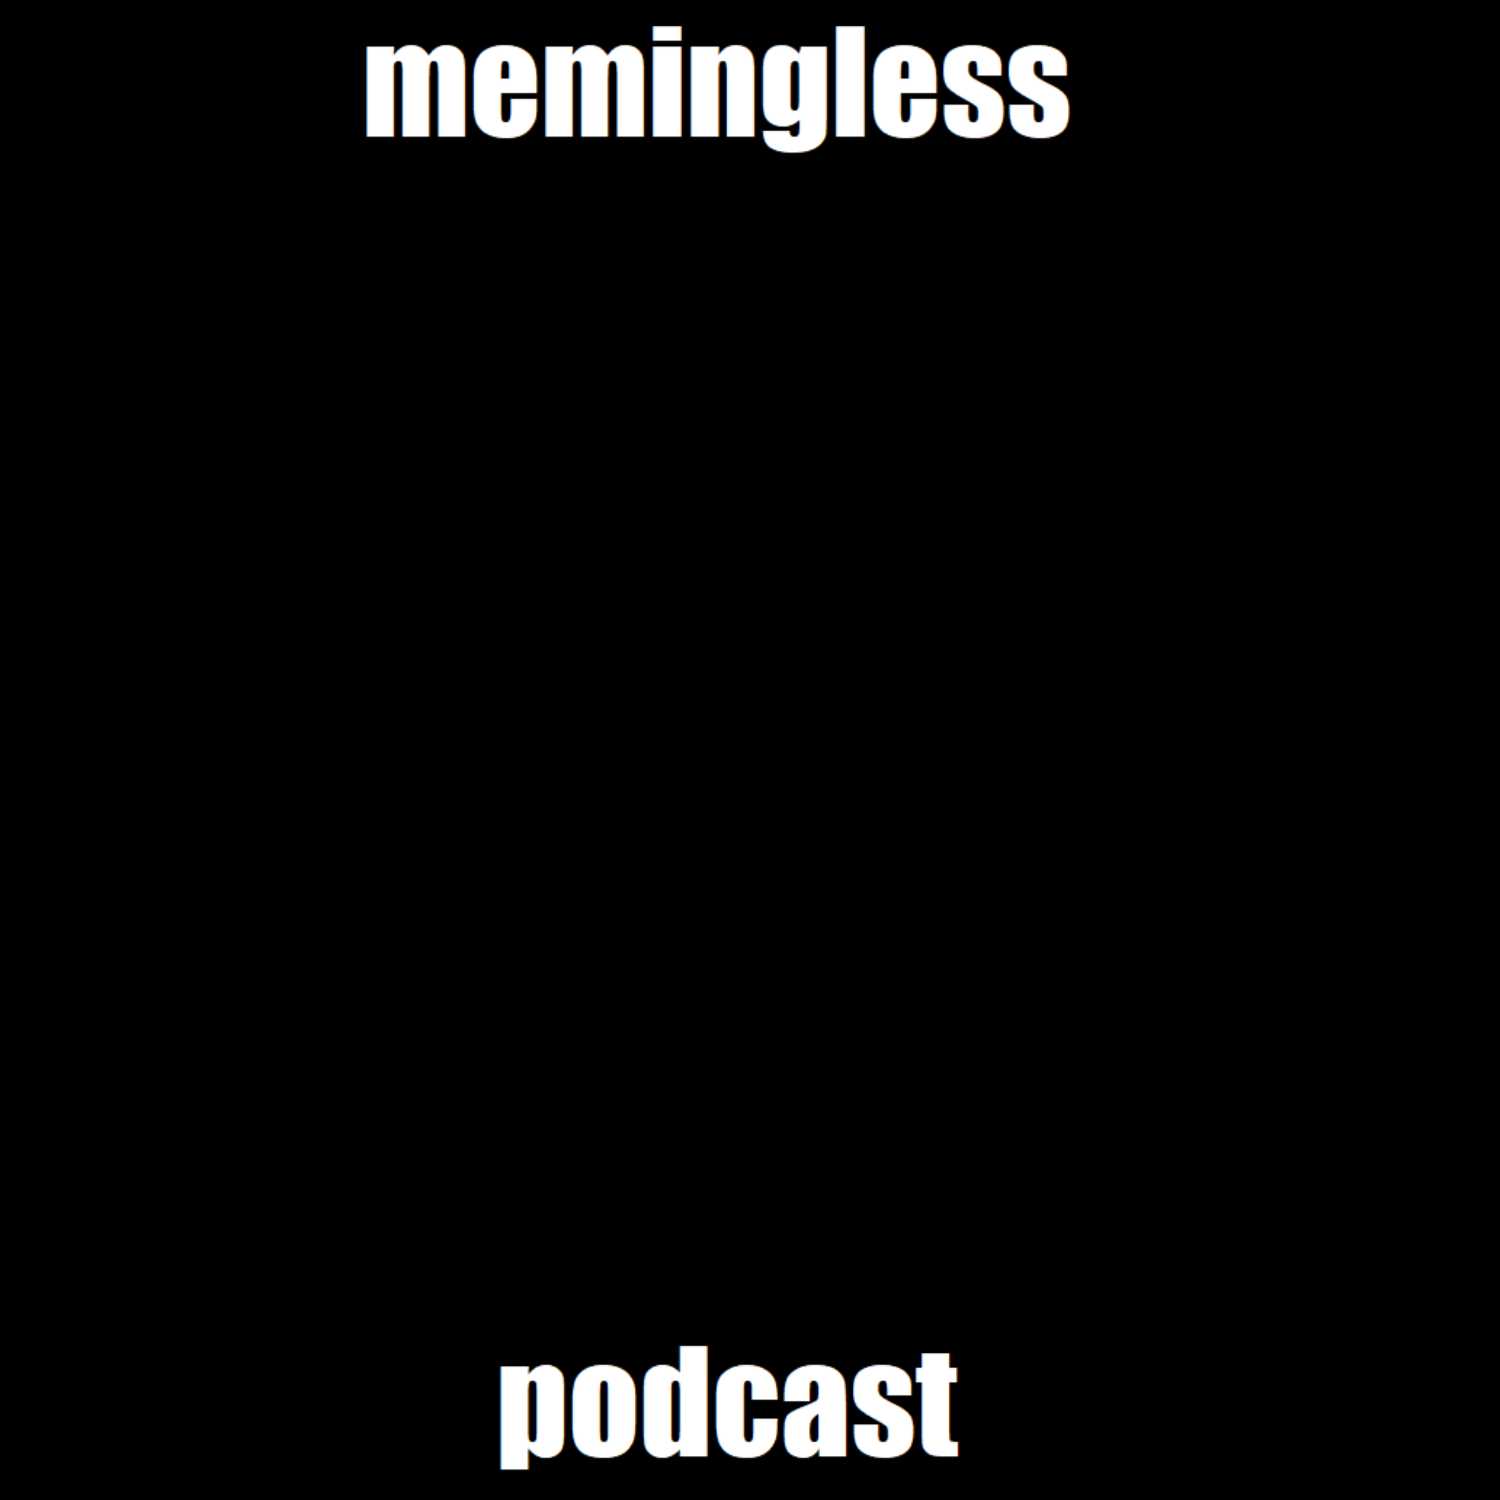 Memingless